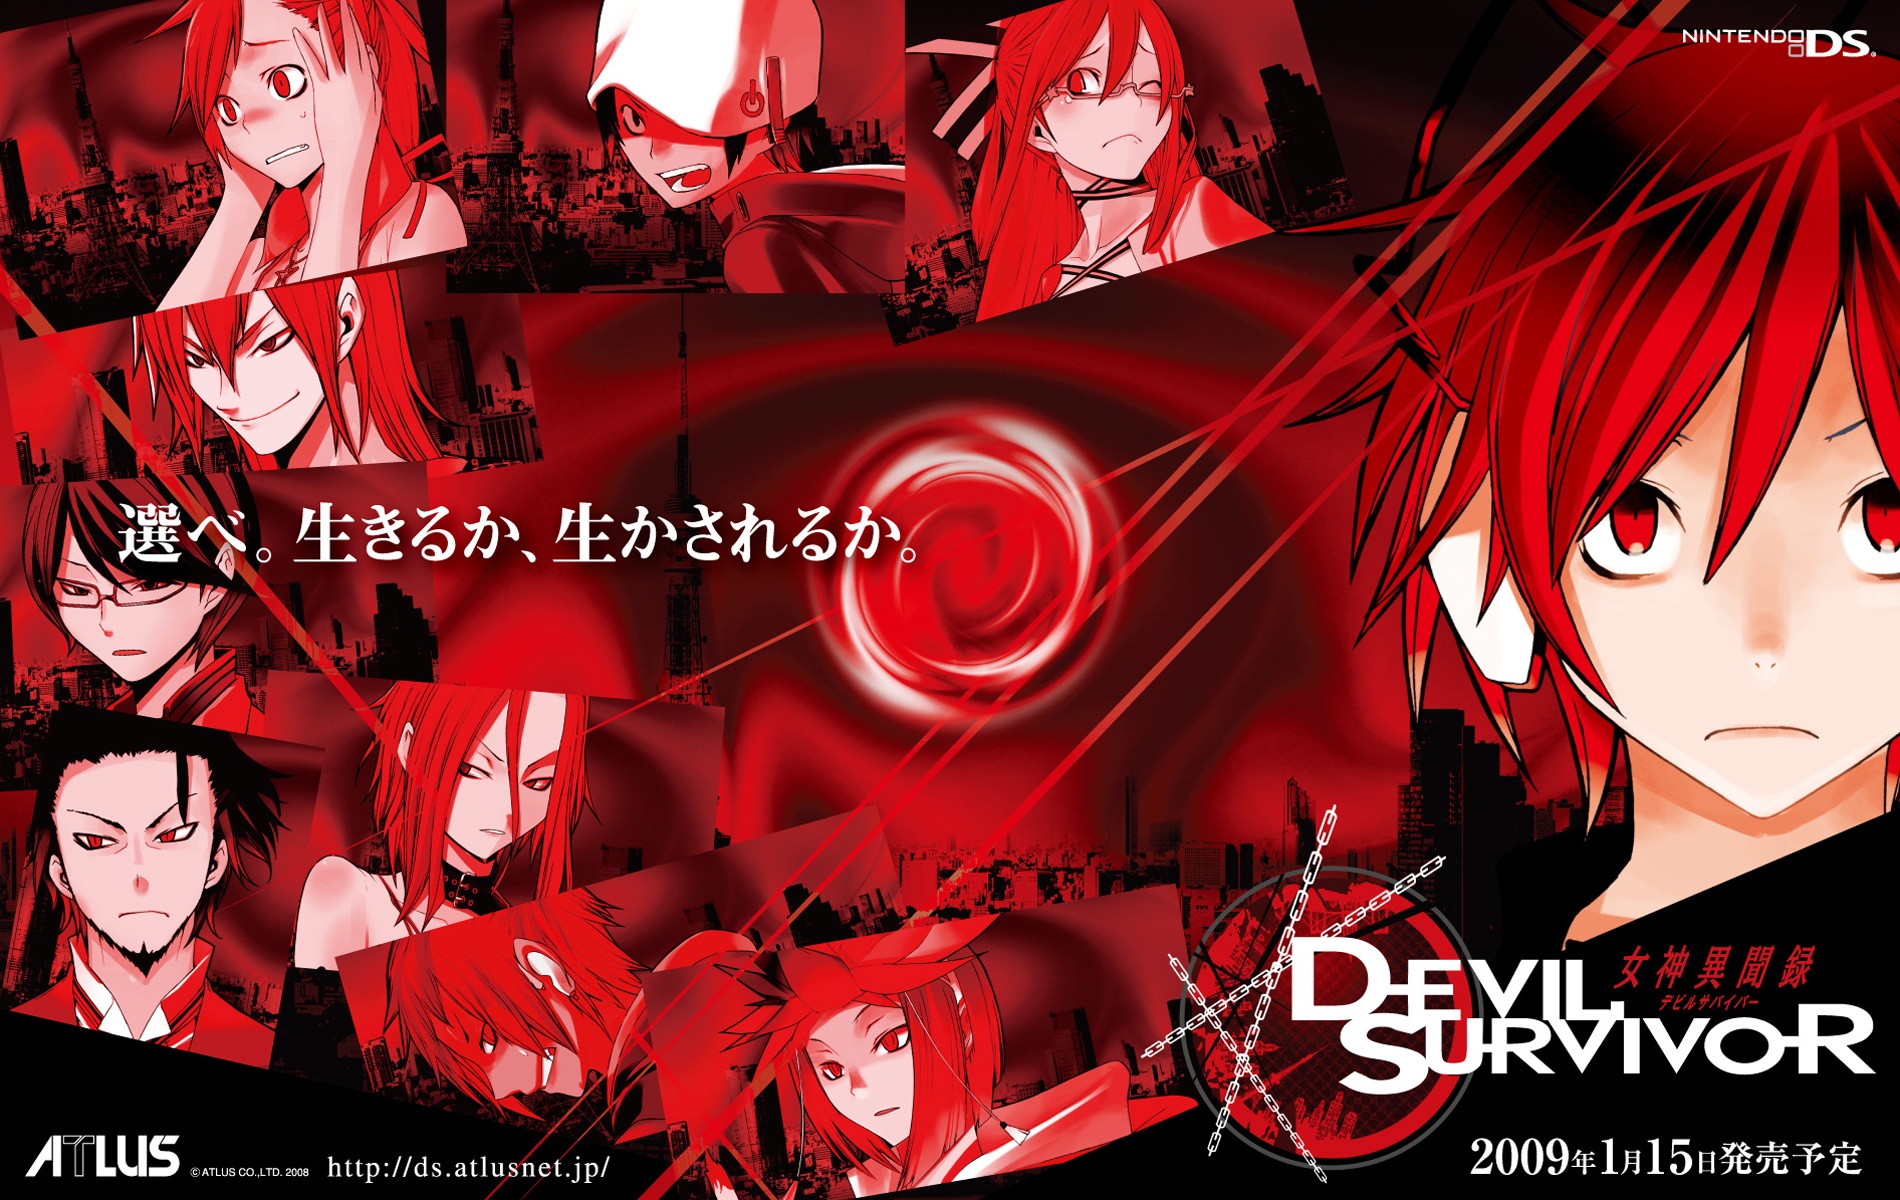 Shin Megami Tensei: Devil Survivor #20